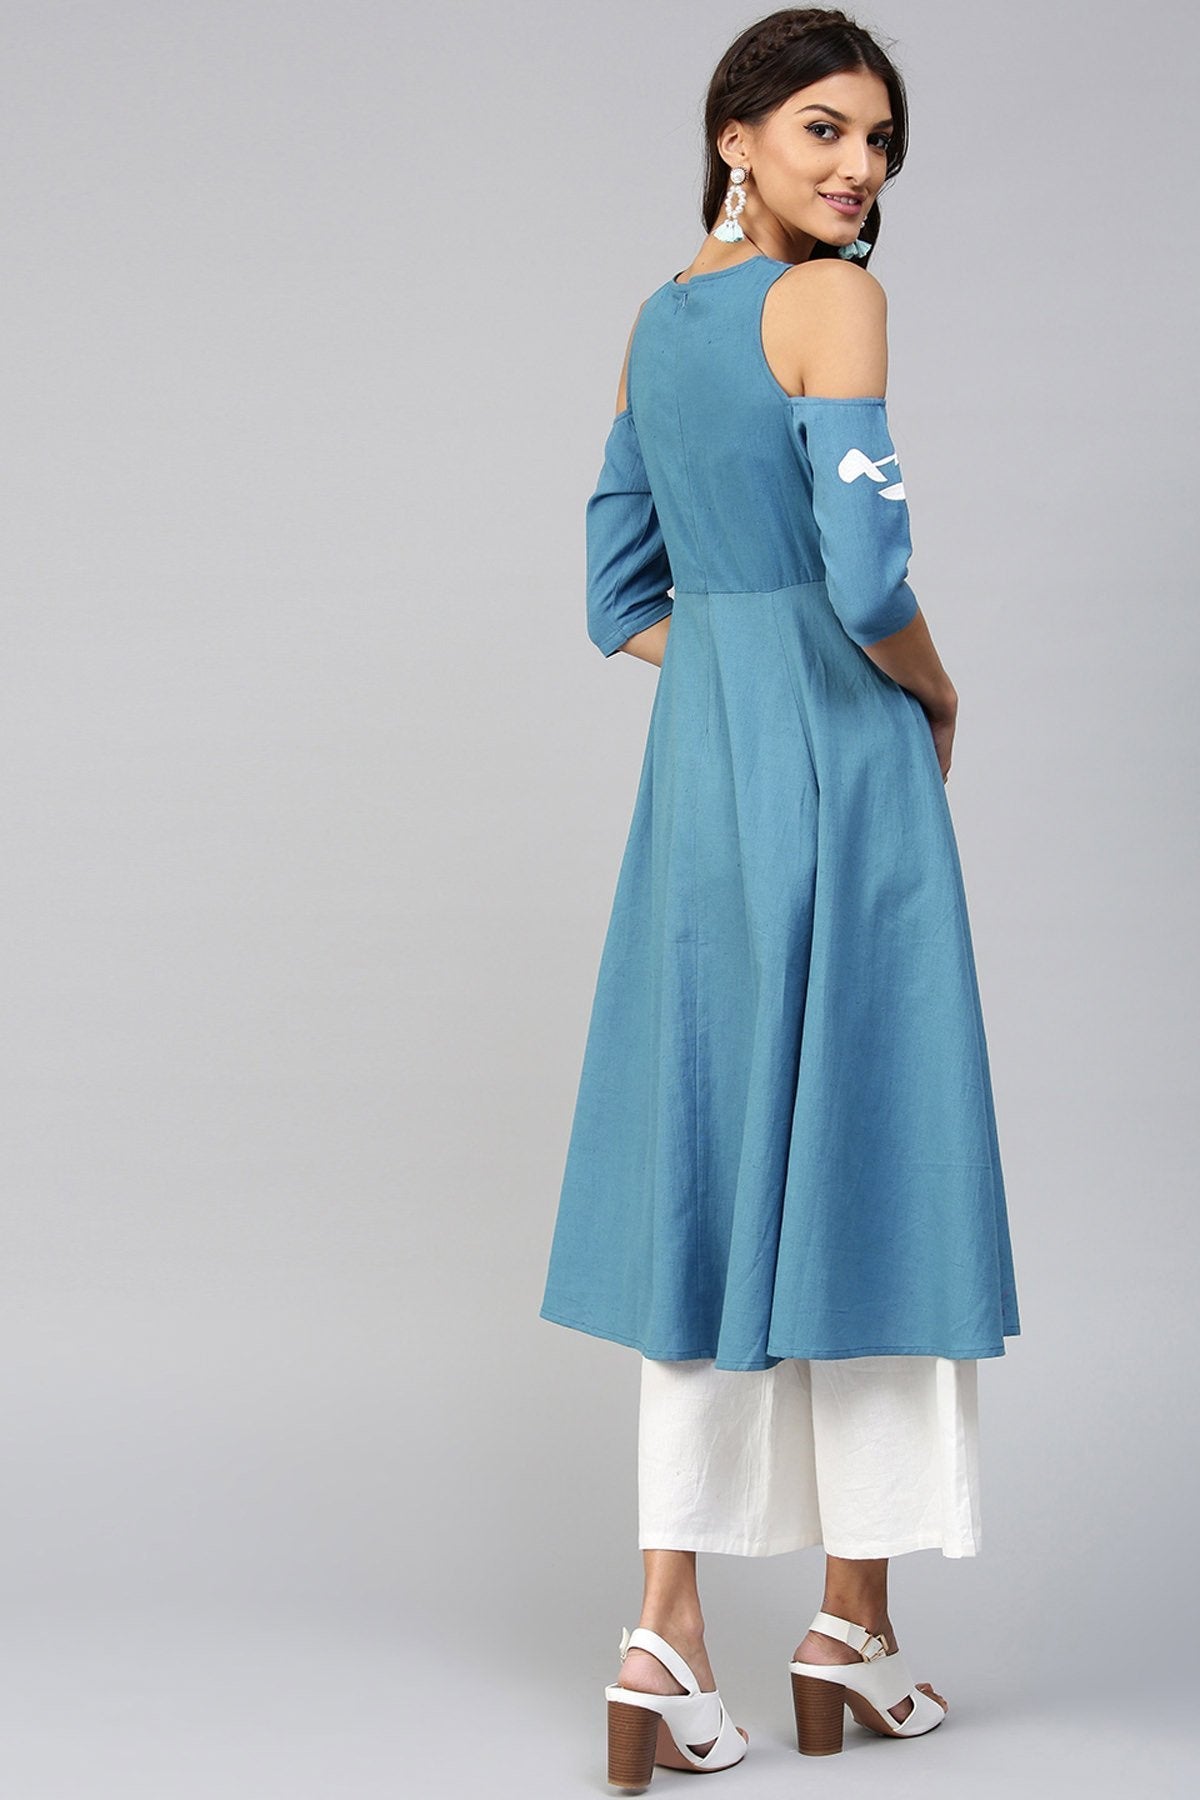 Women's Cold Shoulder Embroidered Blue Anarkali - SHAE